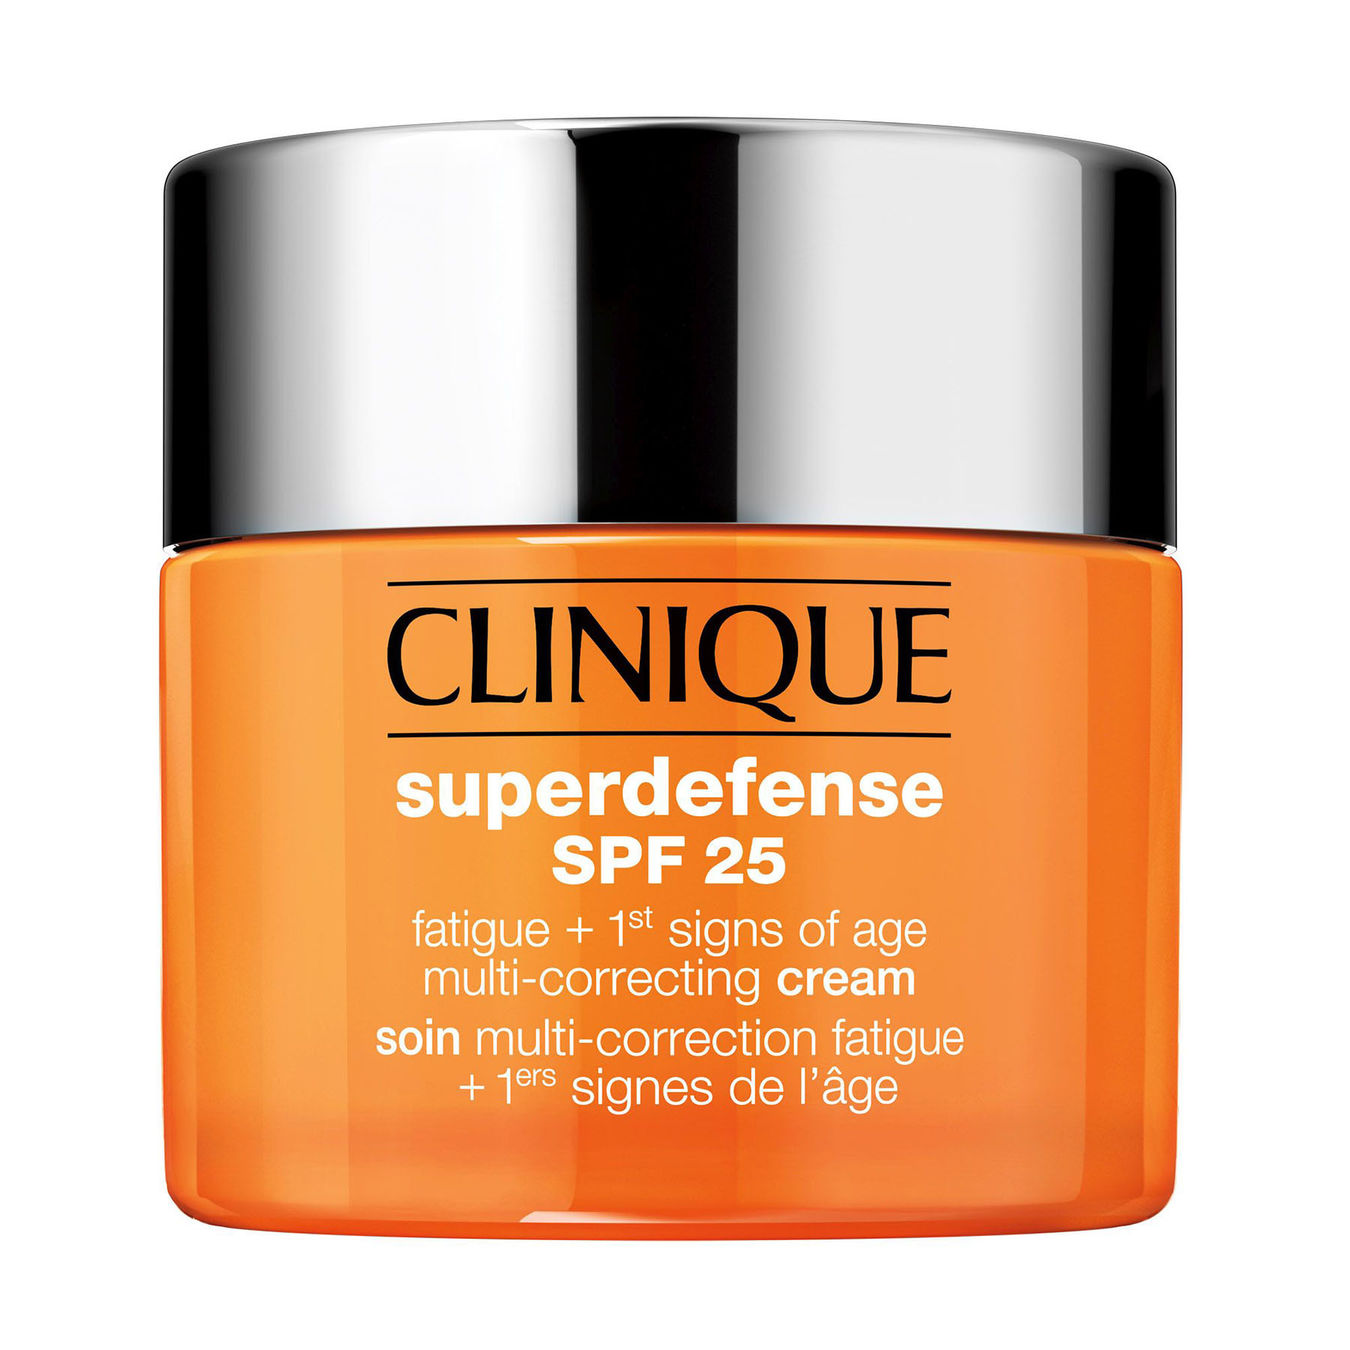 Clinique Superdefense Multi-Correcting Cream von Clinique